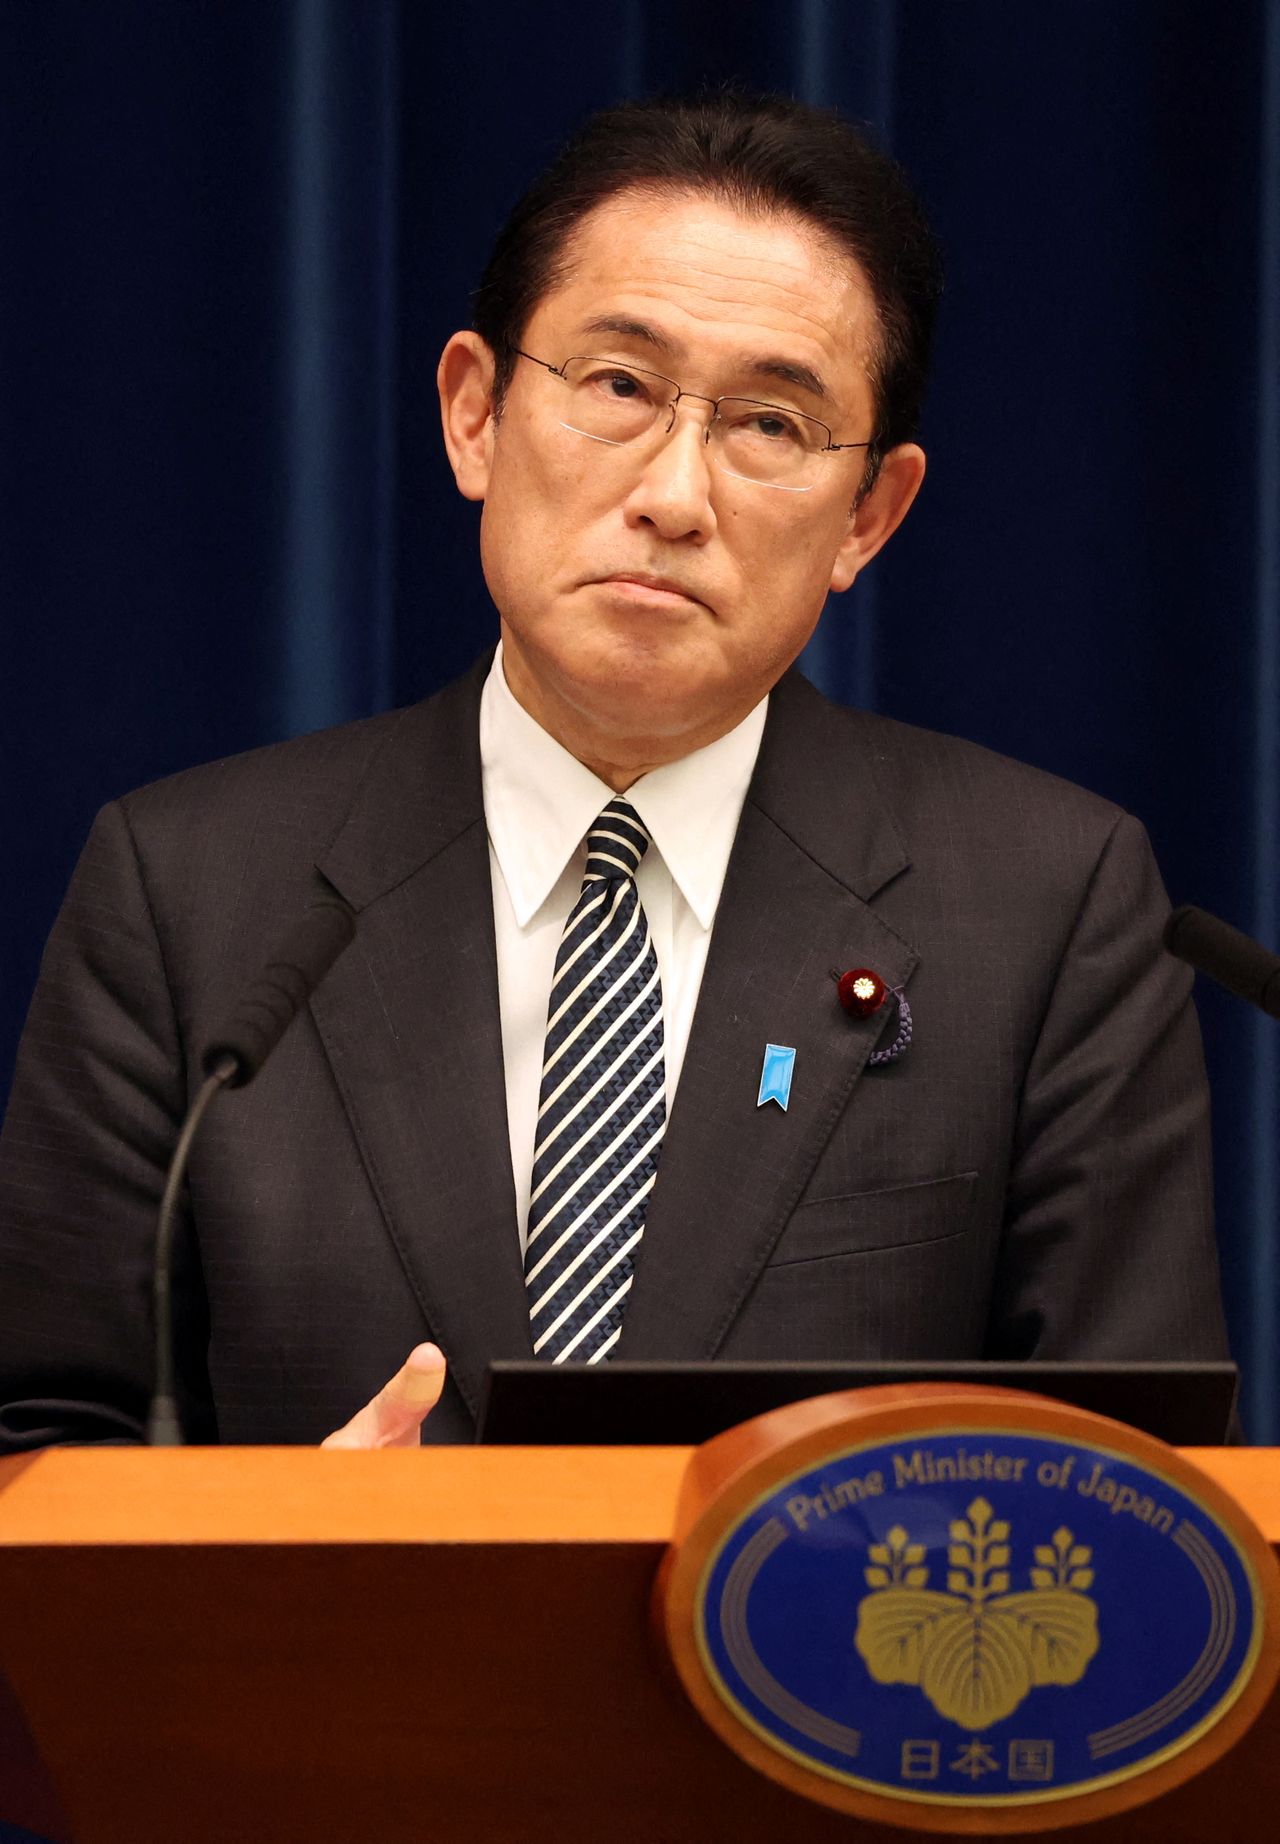 رئيس وزراء اليابان فوميو كيشيدا يتحدث لوسائل إعلام في المقر الرسمي لإقامته في طوكيو يوم 21 ديسمبر كانون الأول 2021. صورة لرويترز من ممثل لوكالات الأنباء.